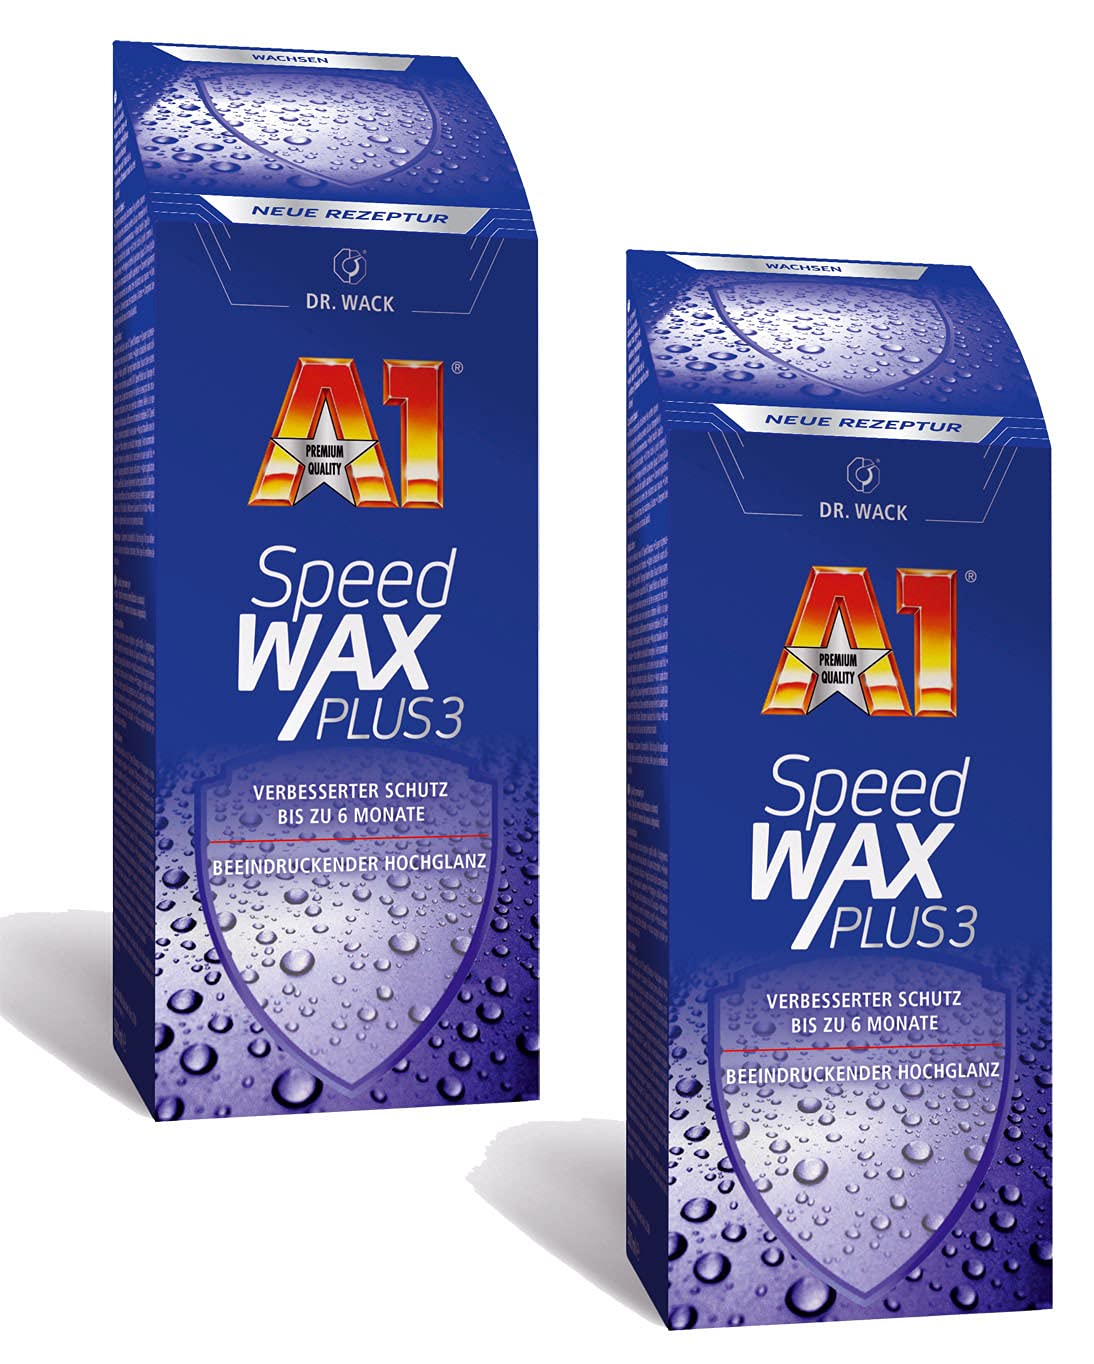 ILODA 2X 250ml Dr. Wack A1 Speed Wax Plus 3, Auto-Hartwachs, Auto-Wachs, Lackschutz, Lackversiegelung, Carnauba-Wachs mit extrem langanhaltenden Wasser-Abperl-Effekt für alle Lacke